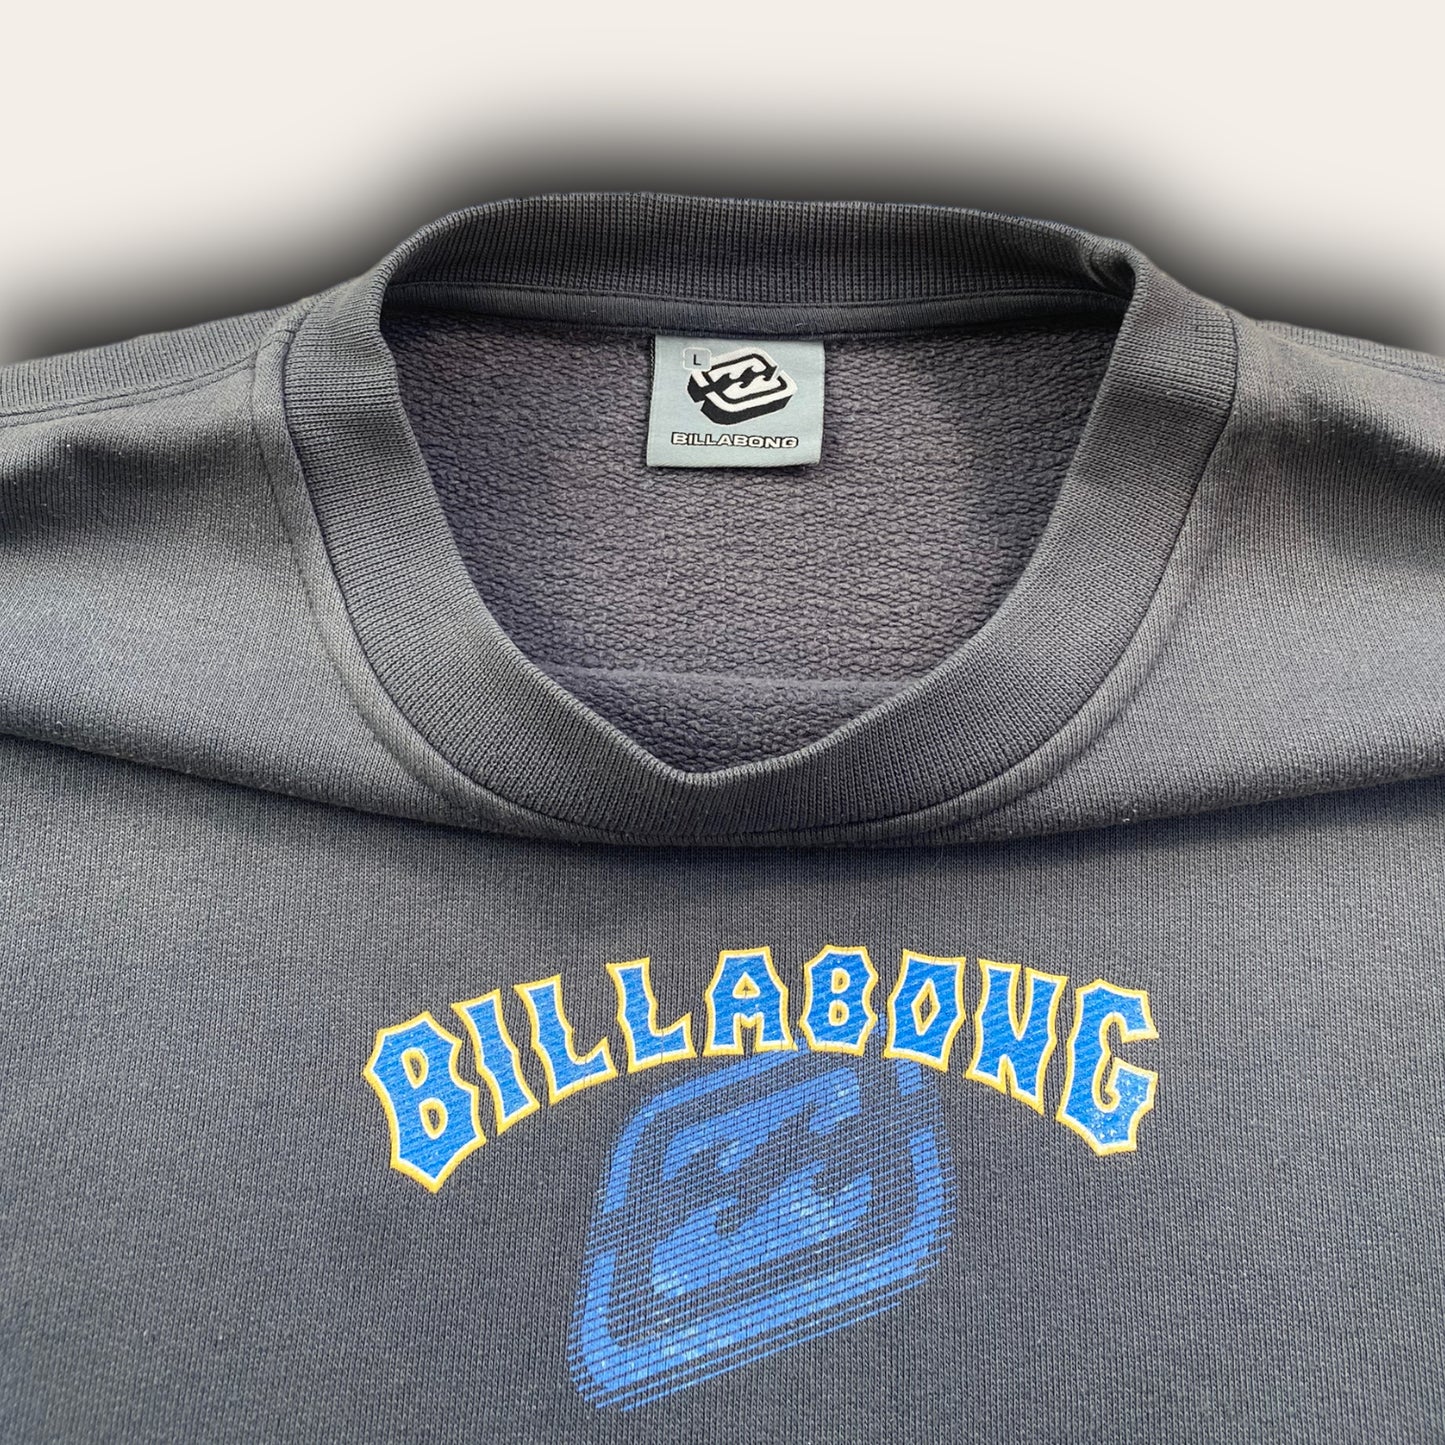 Billabong 2000’s Sweatshirt L